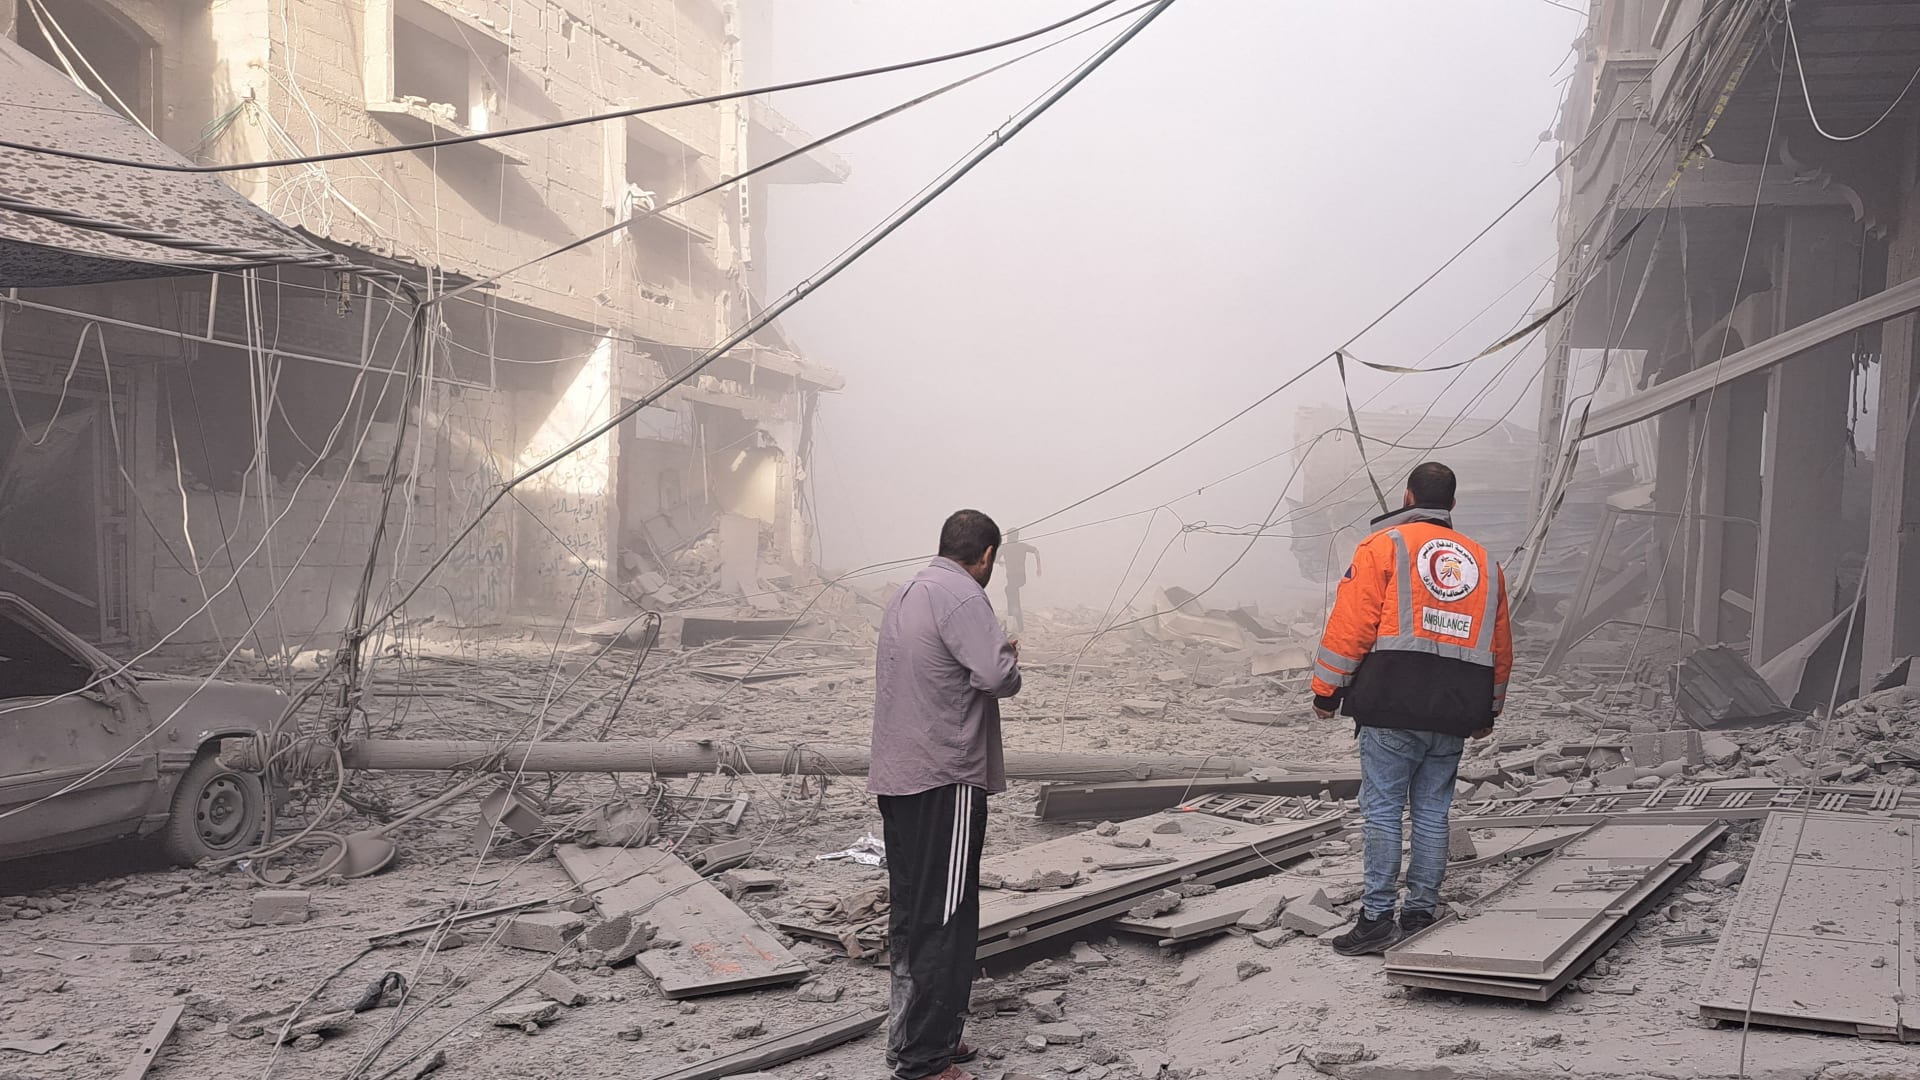 “تم قصف المباني أمام أعيننا”.. إبراهيم دهمان يروي قصة فراره وعائلته من غزة